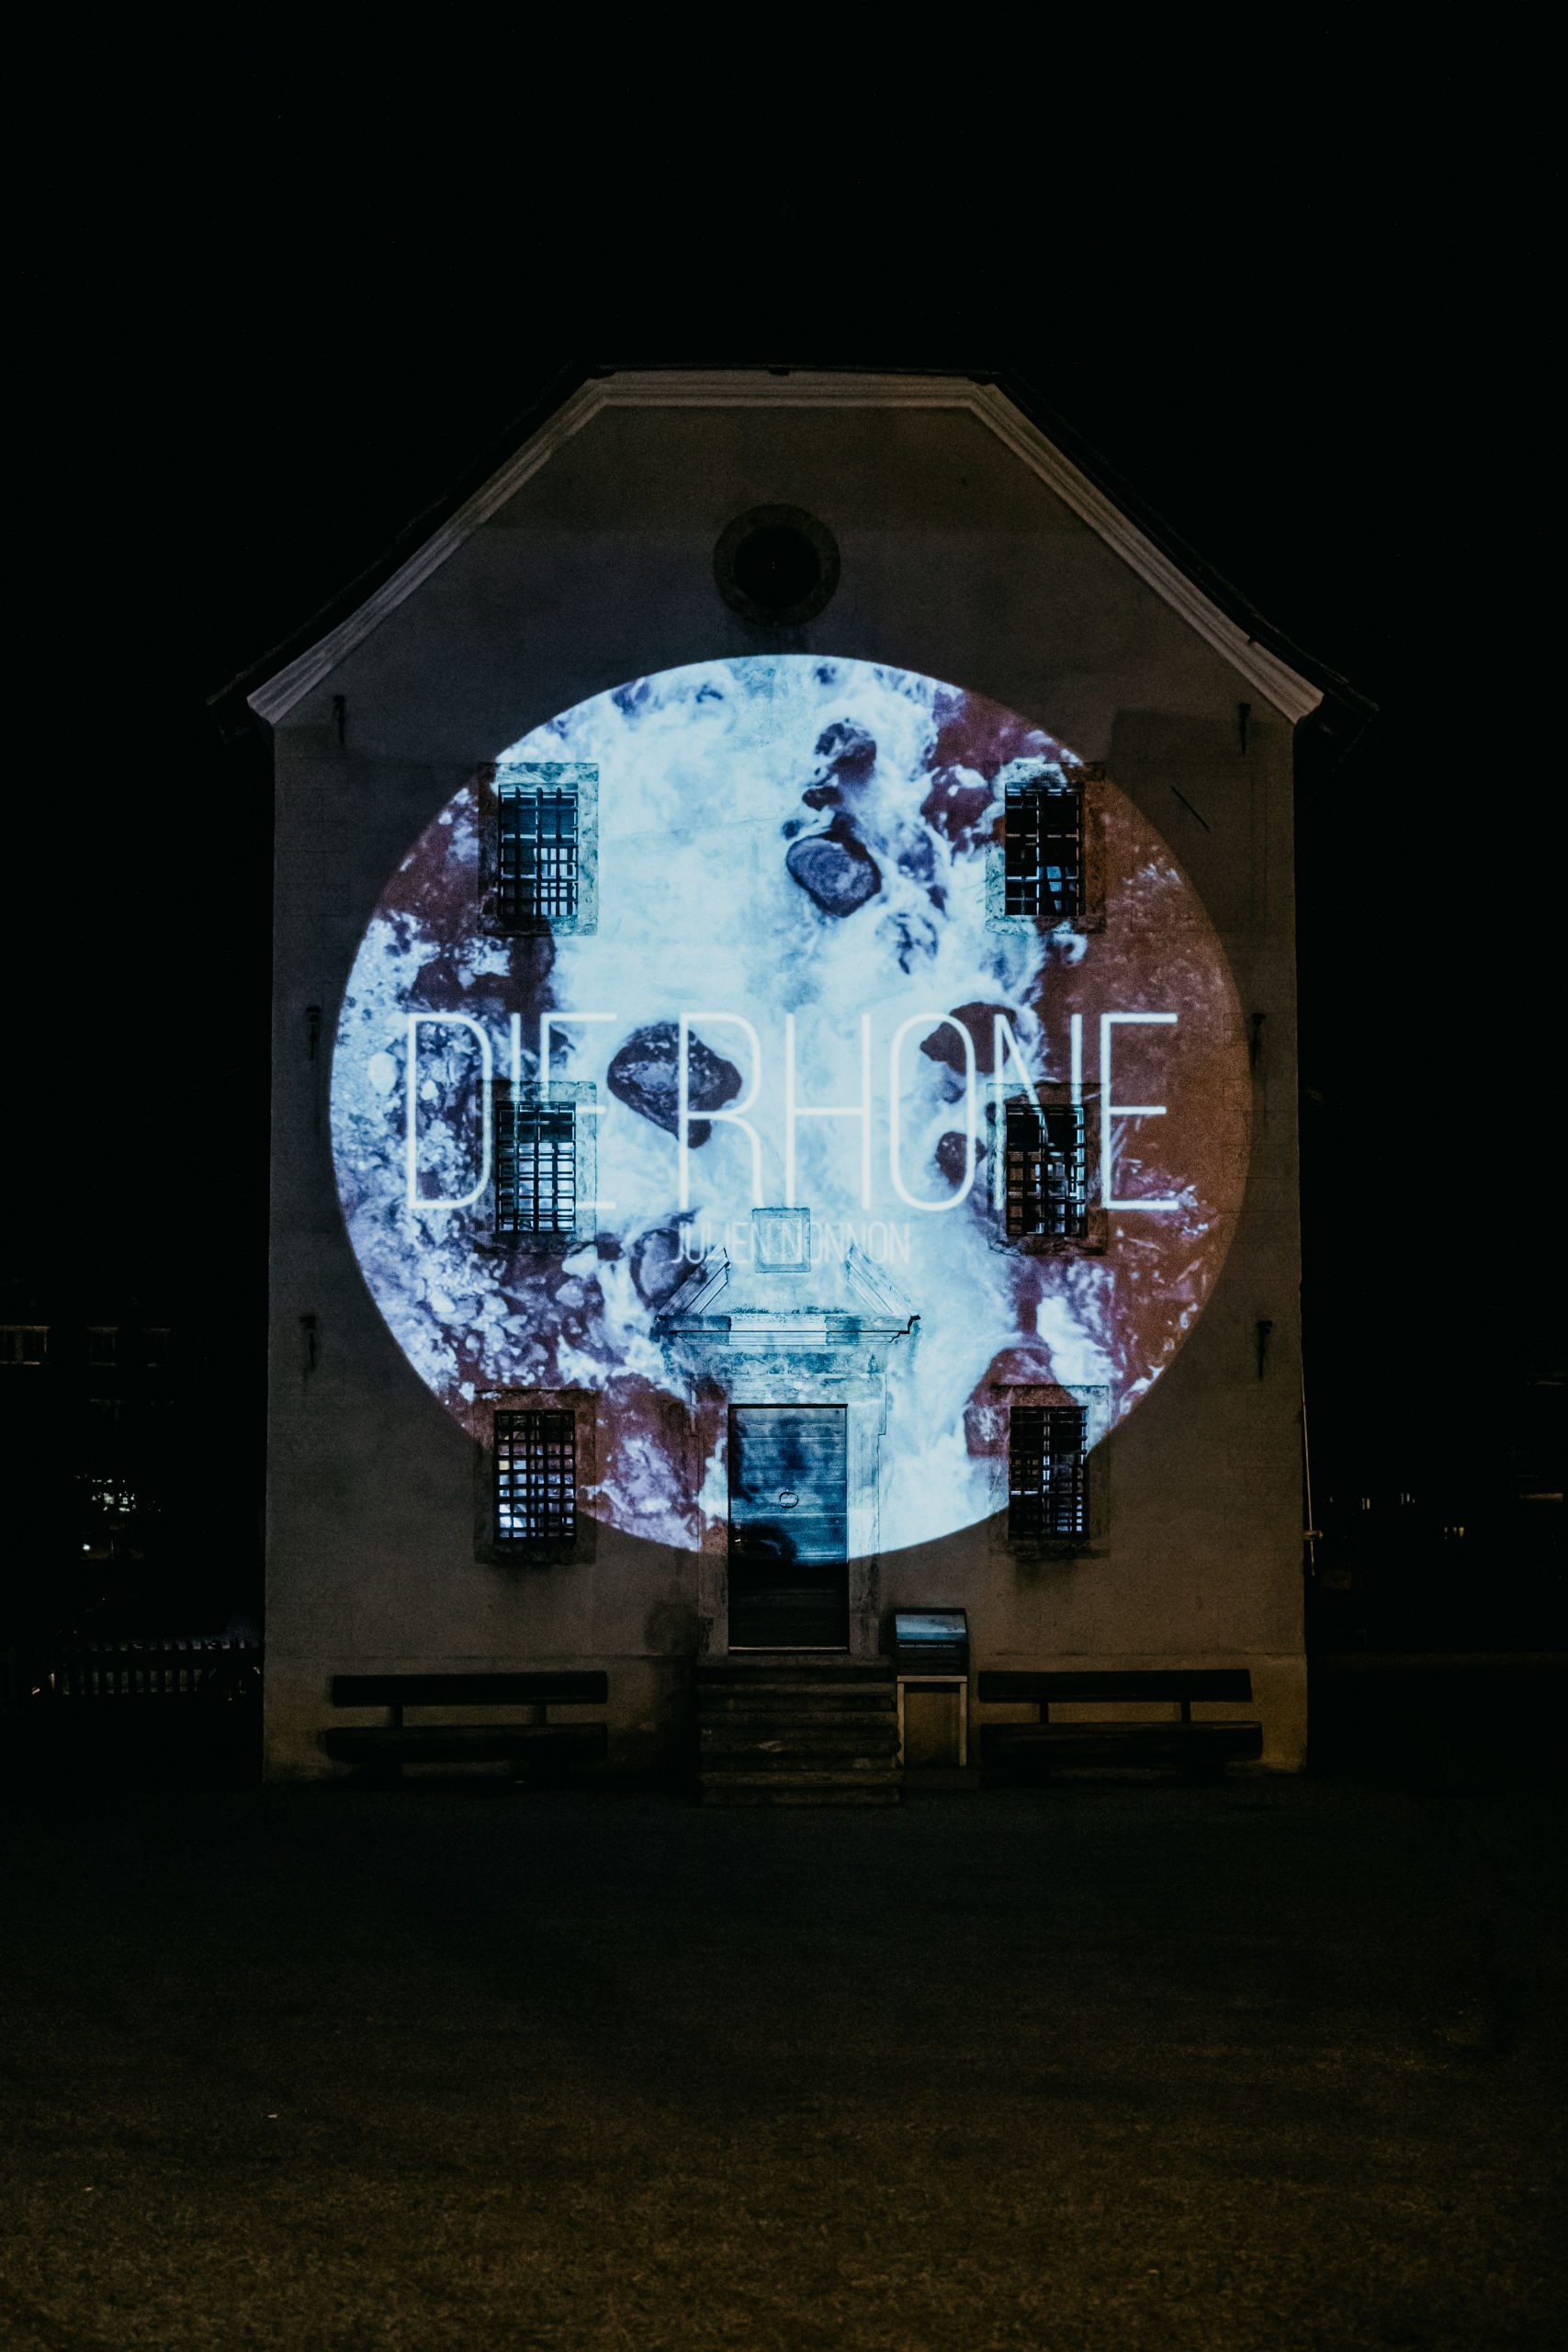 Bildprojektion des französischen Künstlers Julien Nonnon an der Fassade des ehemaligen Gefängnisses im geschützten Dorfkern von Ernen, Wallis, Schweiz